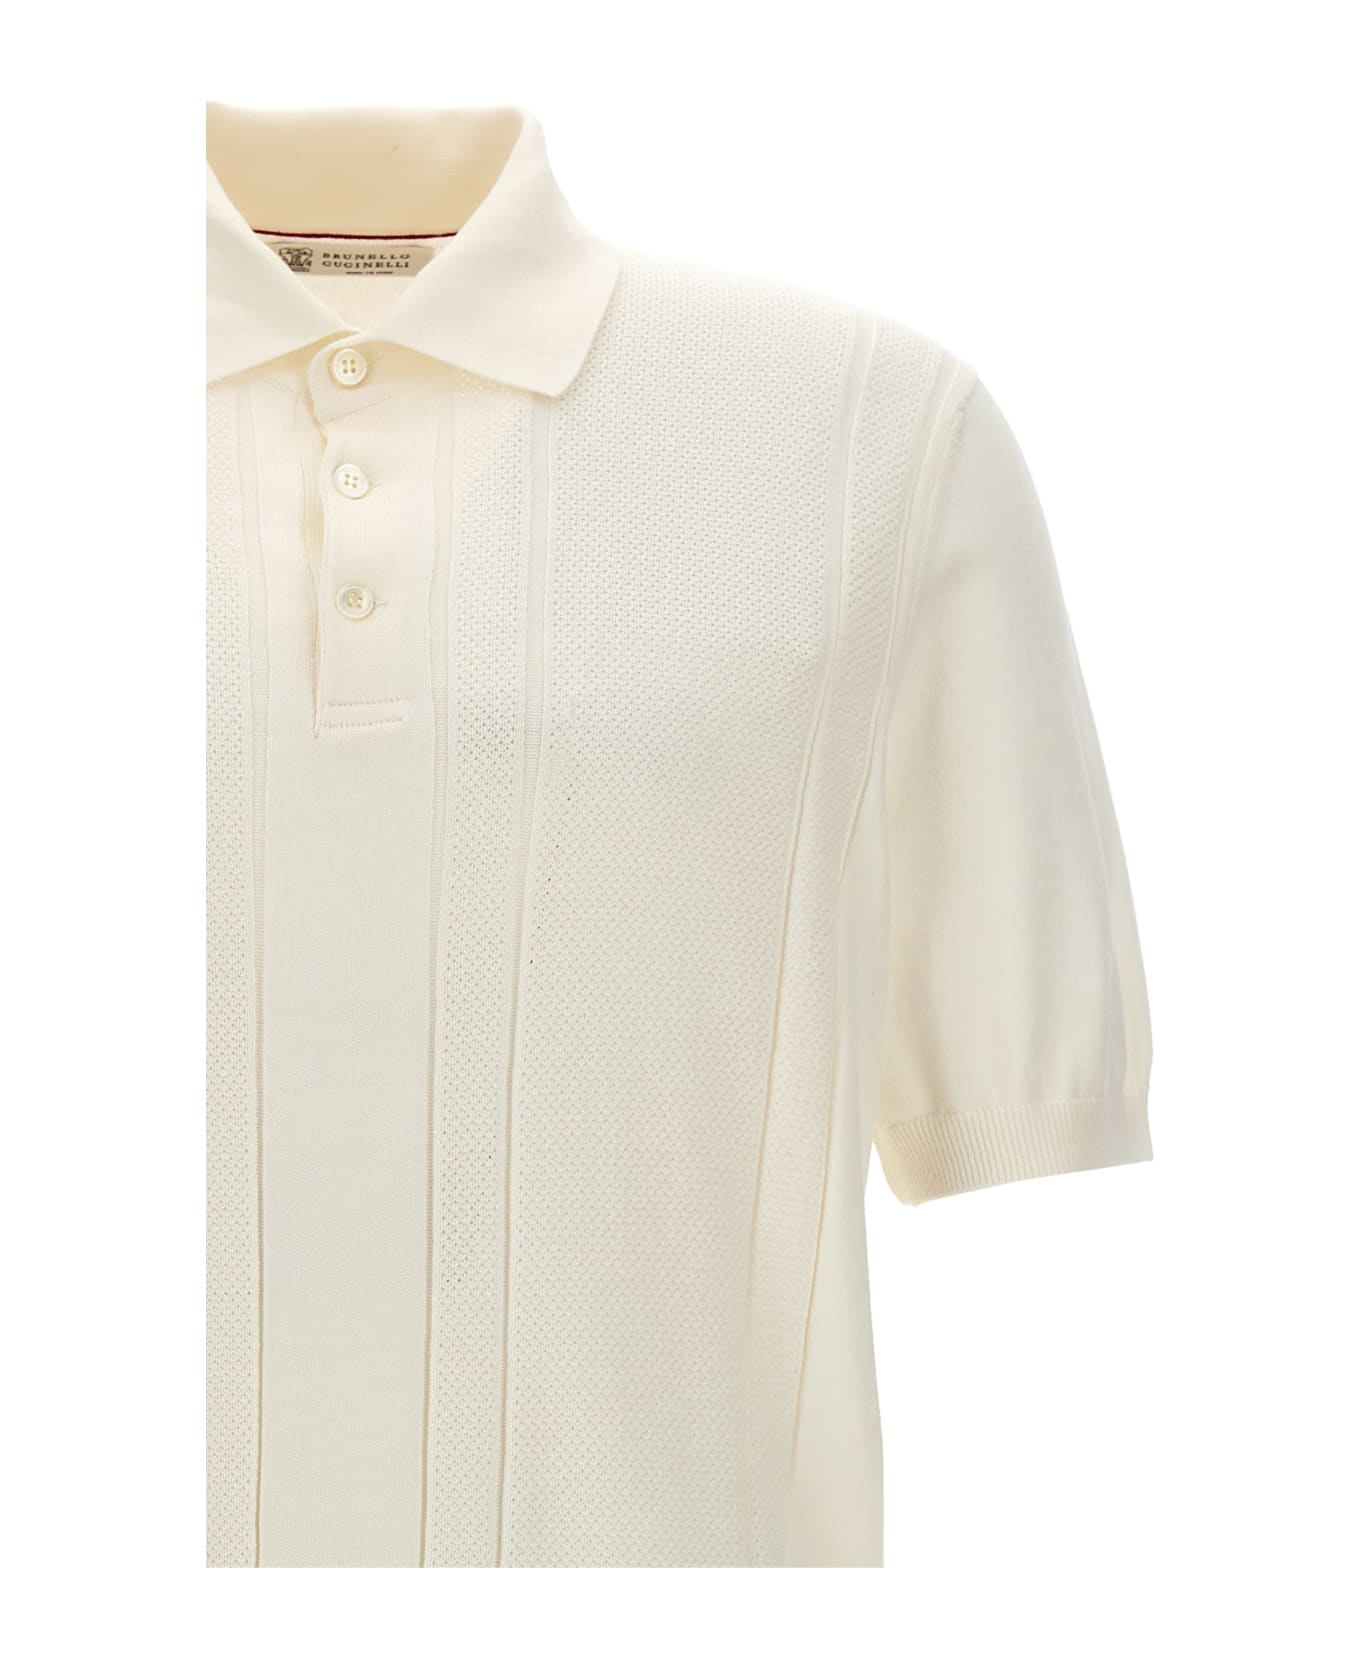 Brunello Cucinelli Cotton Polo Shirt - White